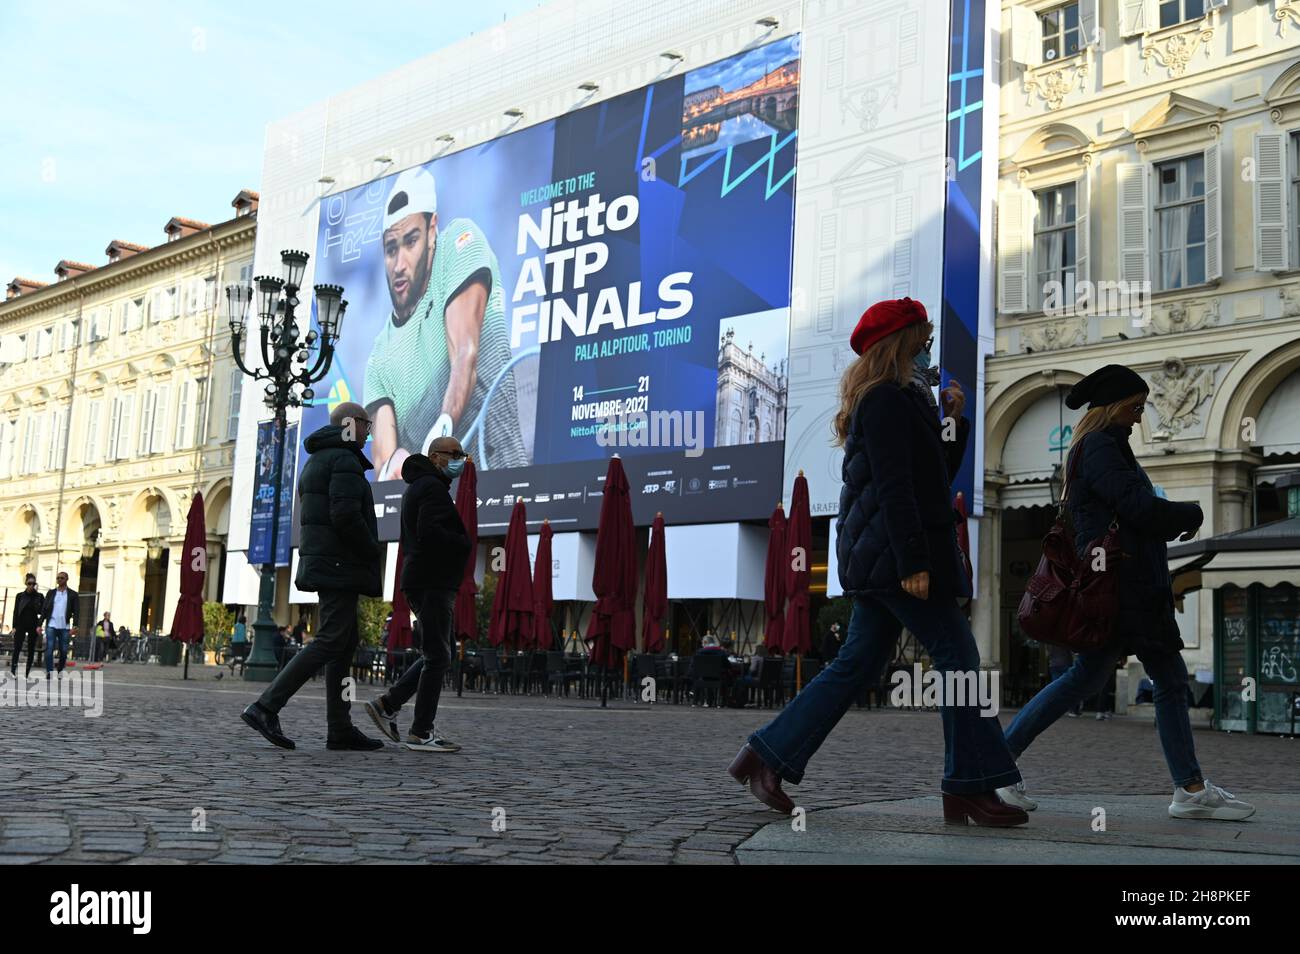 TORINO, ITALIA - 02 novembre 2021: Un enorme cartellone nella piazza principale accoglie l'imminente torneo di finali Nitto ATP, Torino, Italia; 2 novembre 2021 Foto Stock